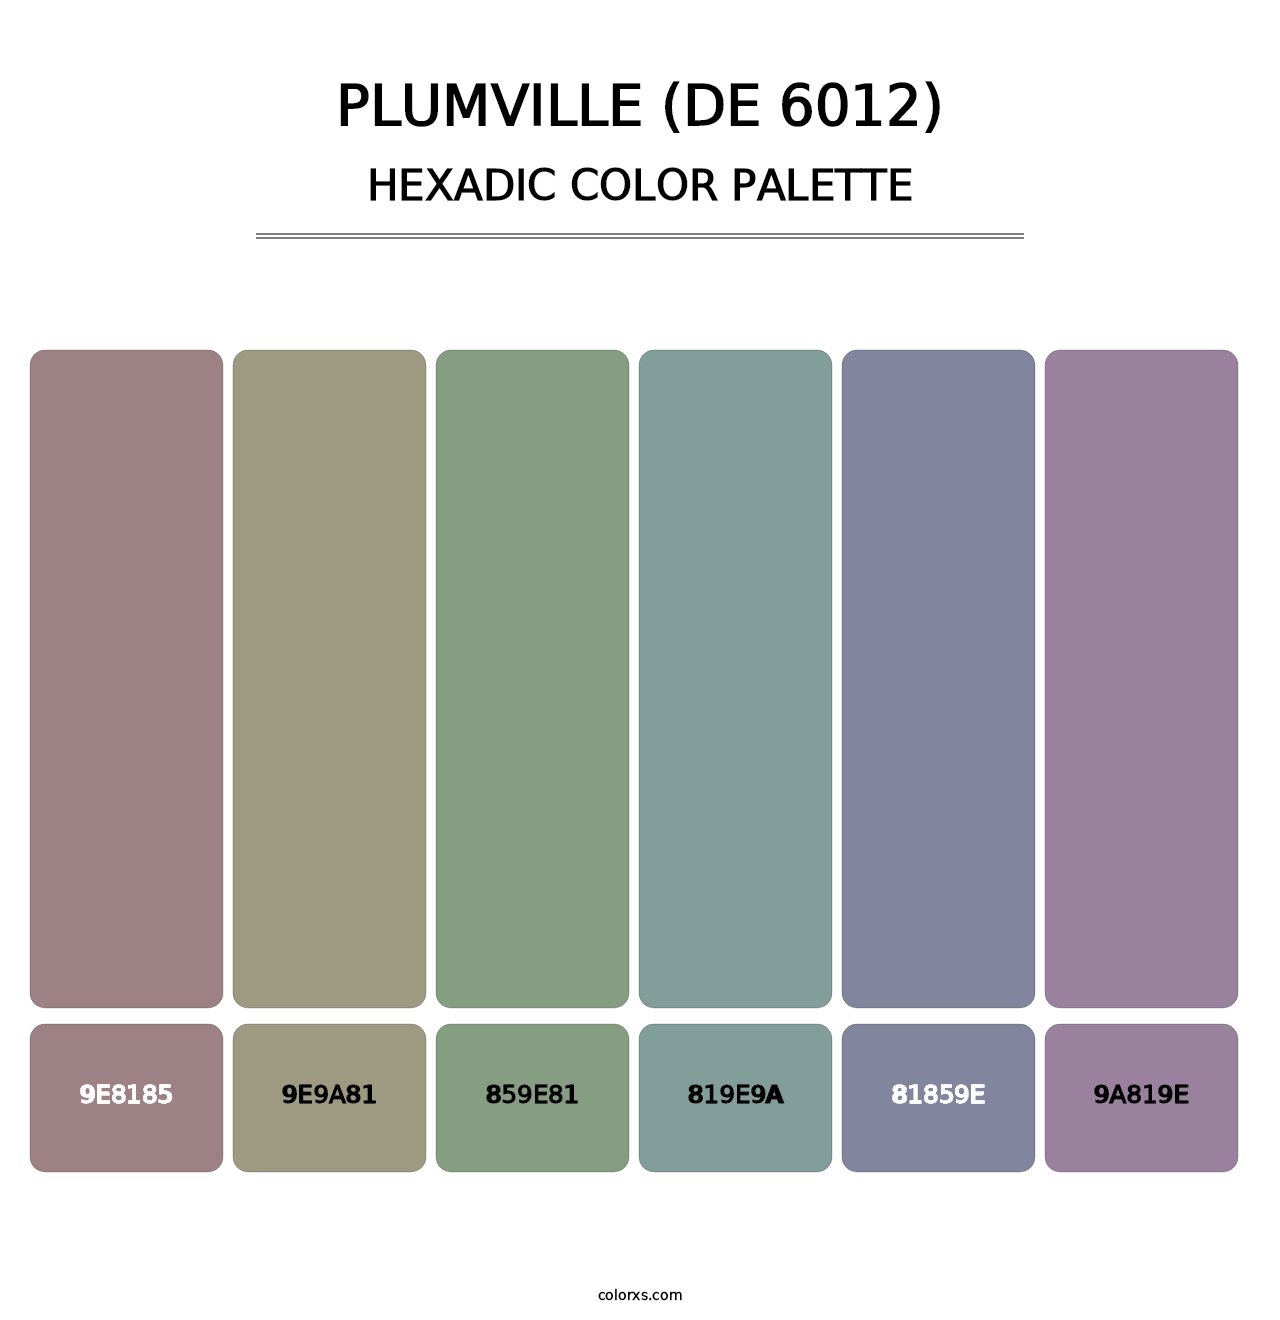 Plumville (DE 6012) - Hexadic Color Palette